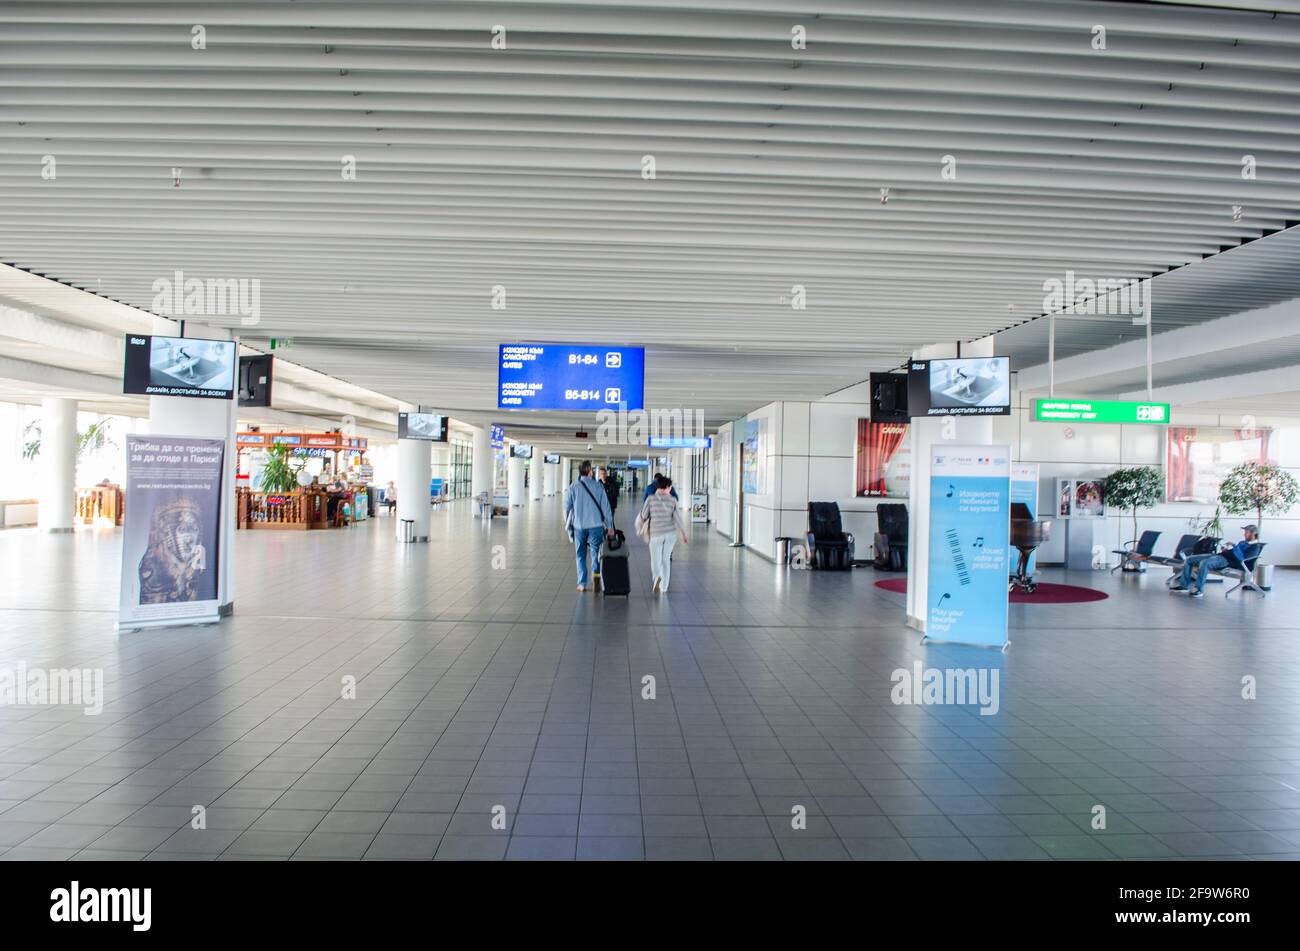 SOFIA, 20 FÉVRIER 2015 : intérieur de l'aéroport international de sofia. Banque D'Images